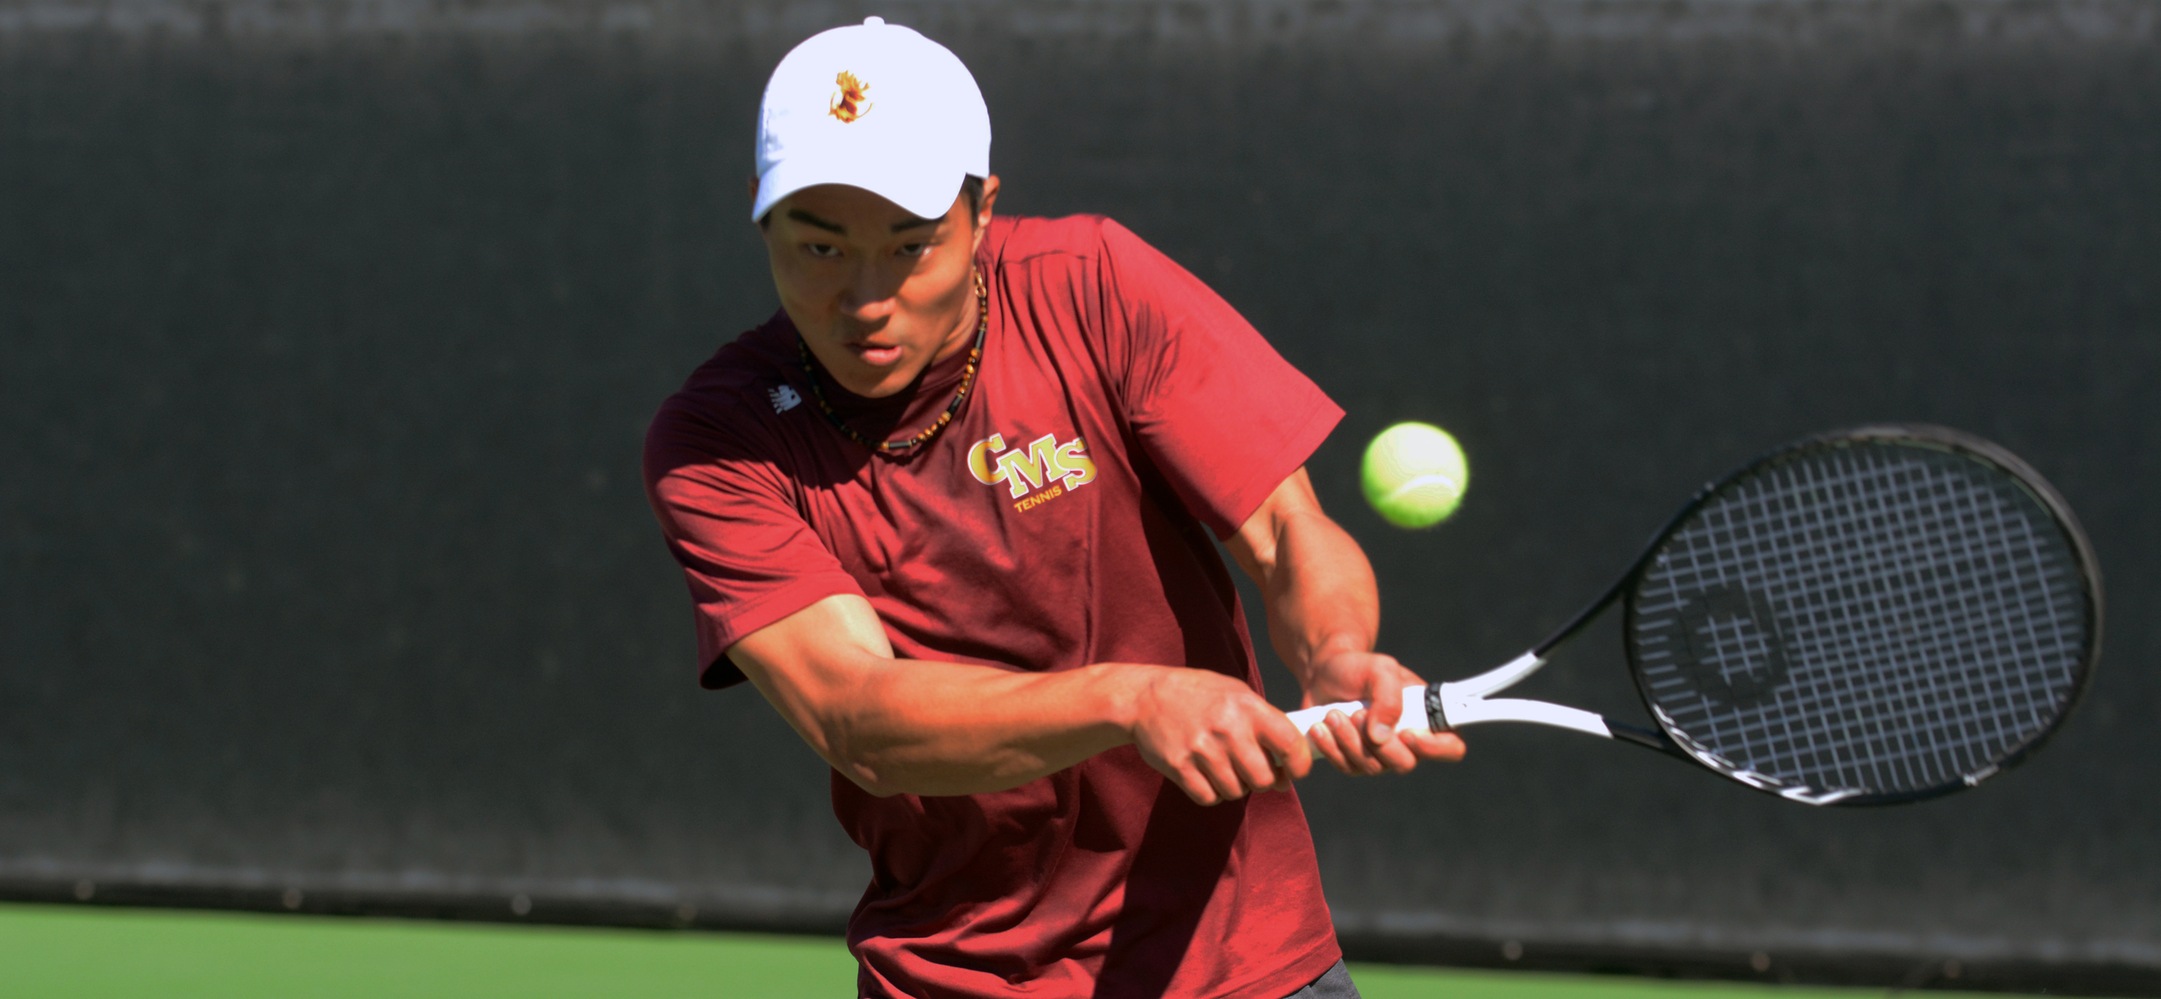 Robert Liu Named SCIAC Men's Tennis Athlete of the Week